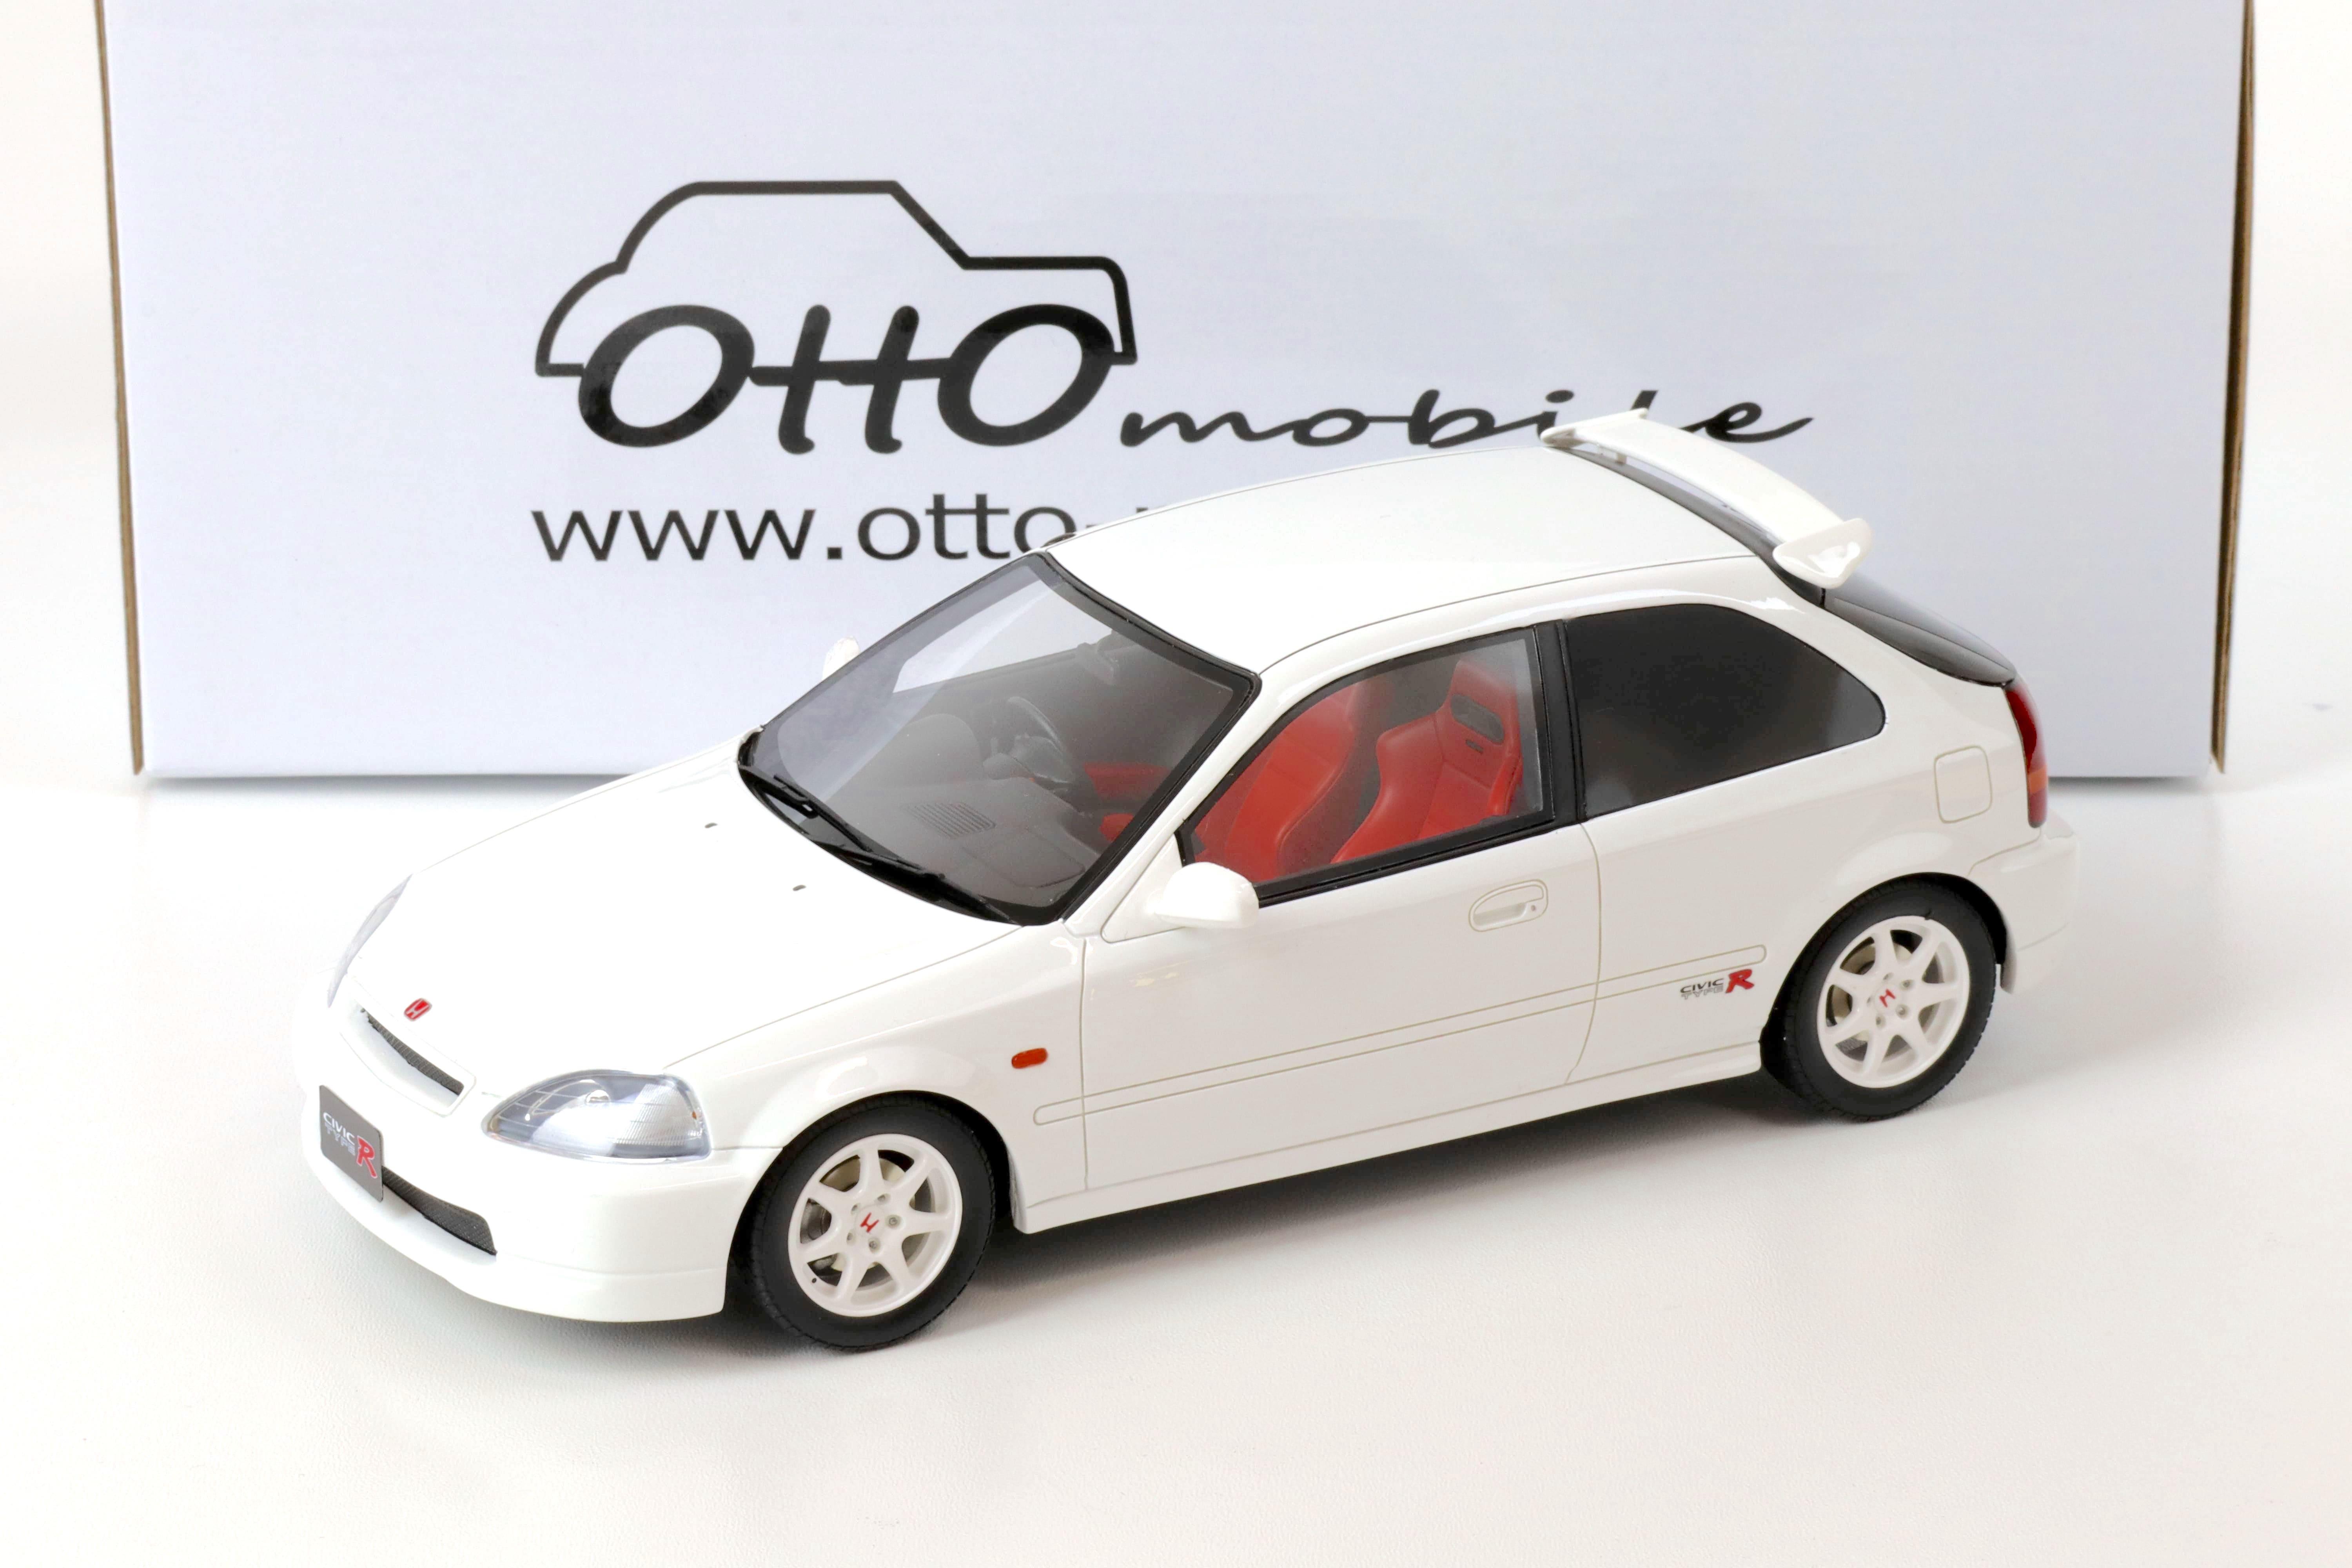 1:18 OTTO mobile OT971 Honda Civic EK9 Type R white 1997